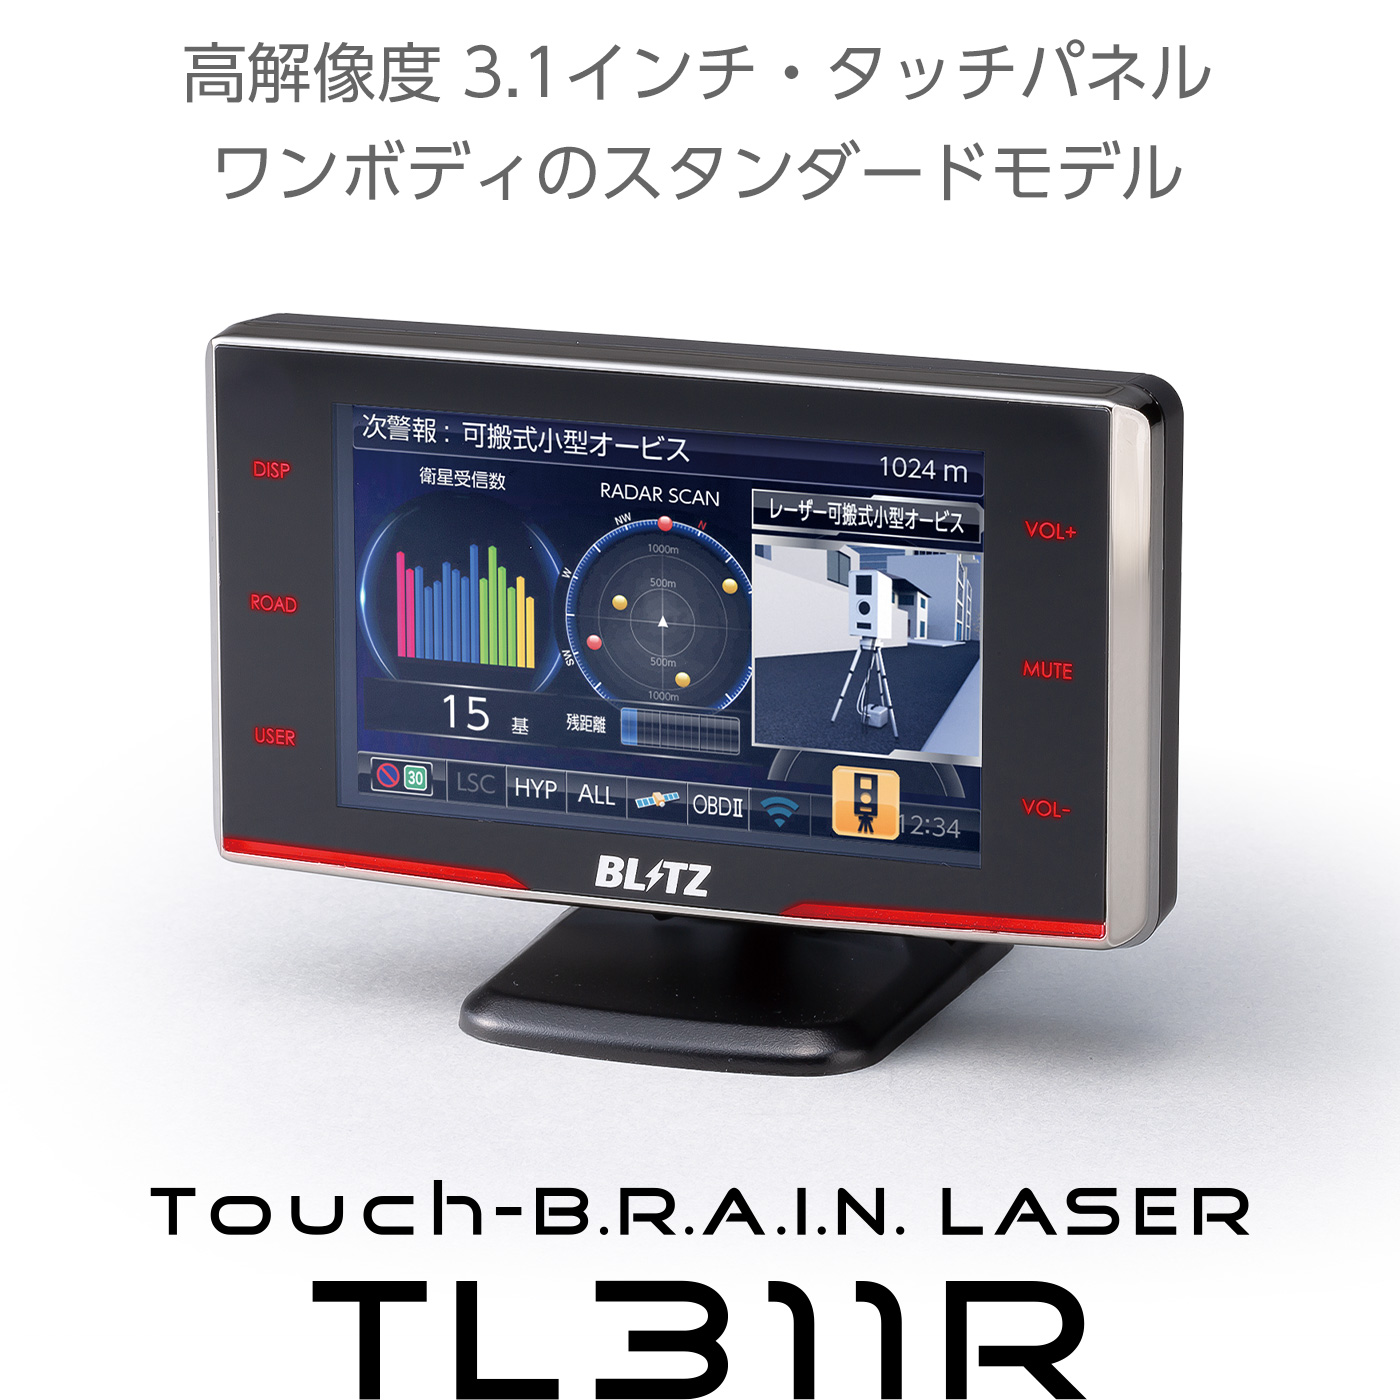 Touch-B.R.A.I.N. LASER 311R